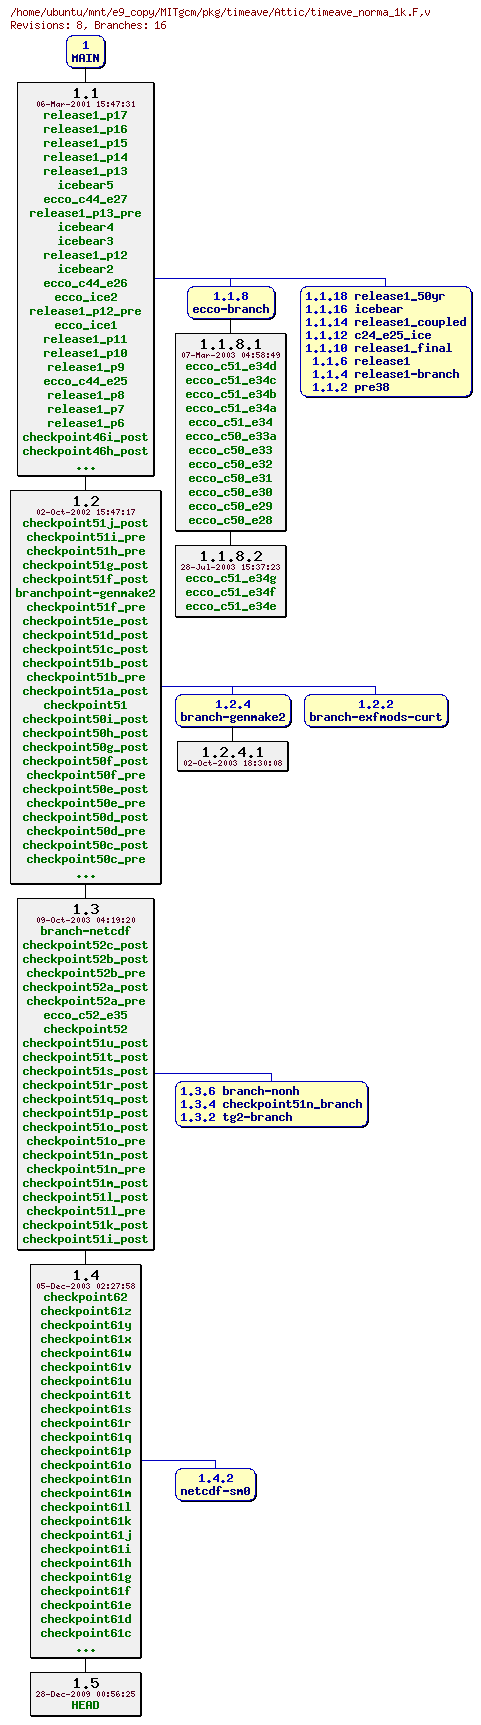 Revisions of MITgcm/pkg/timeave/timeave_norma_1k.F